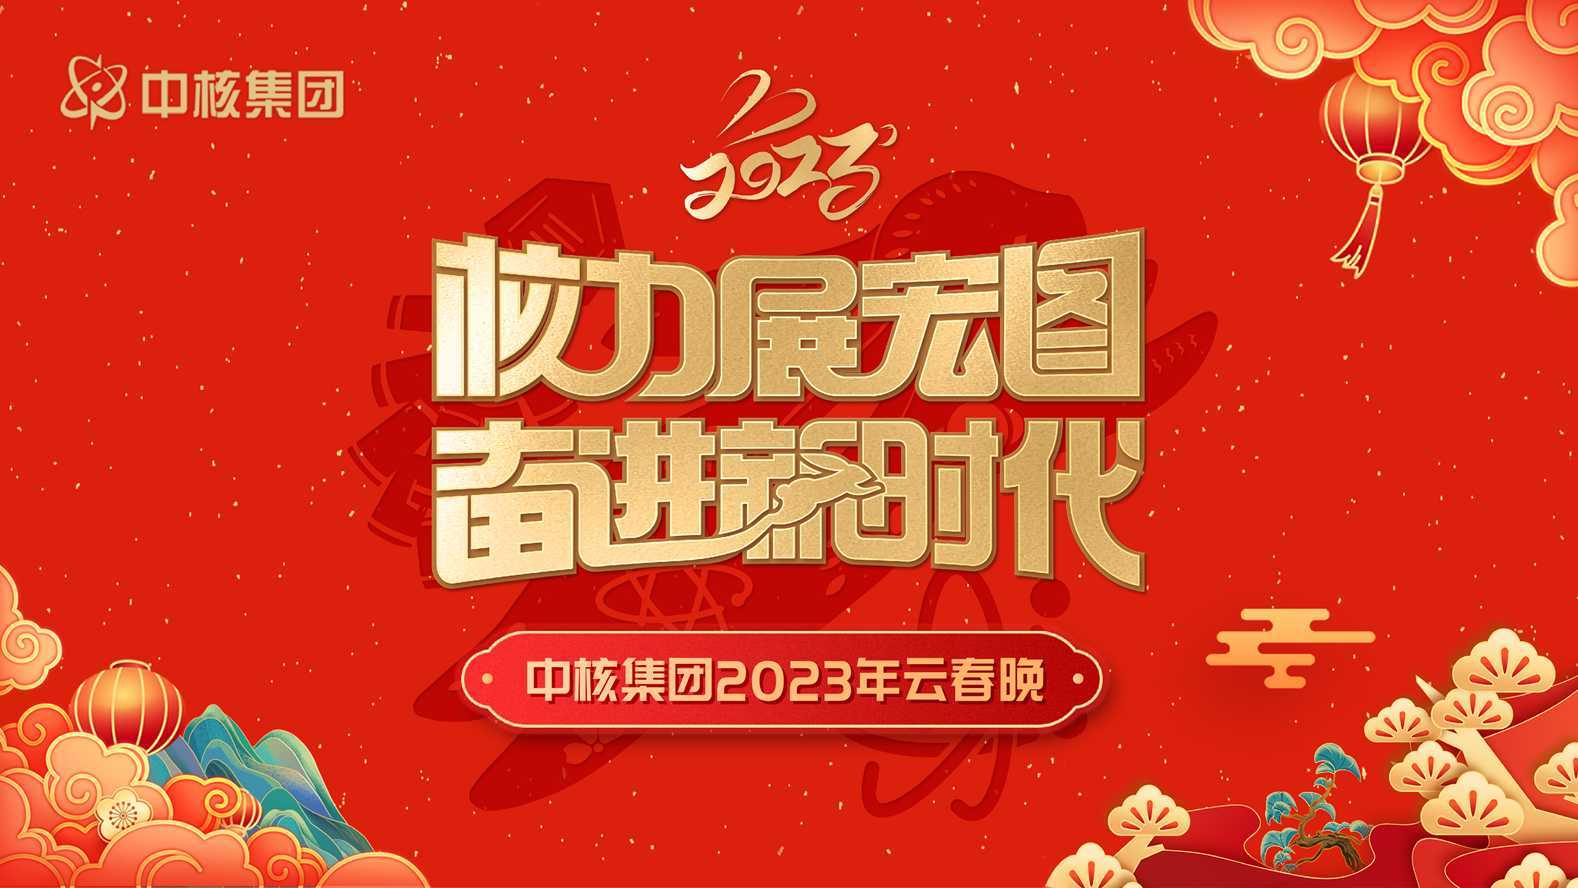 中核集团2023年云春晚预告片